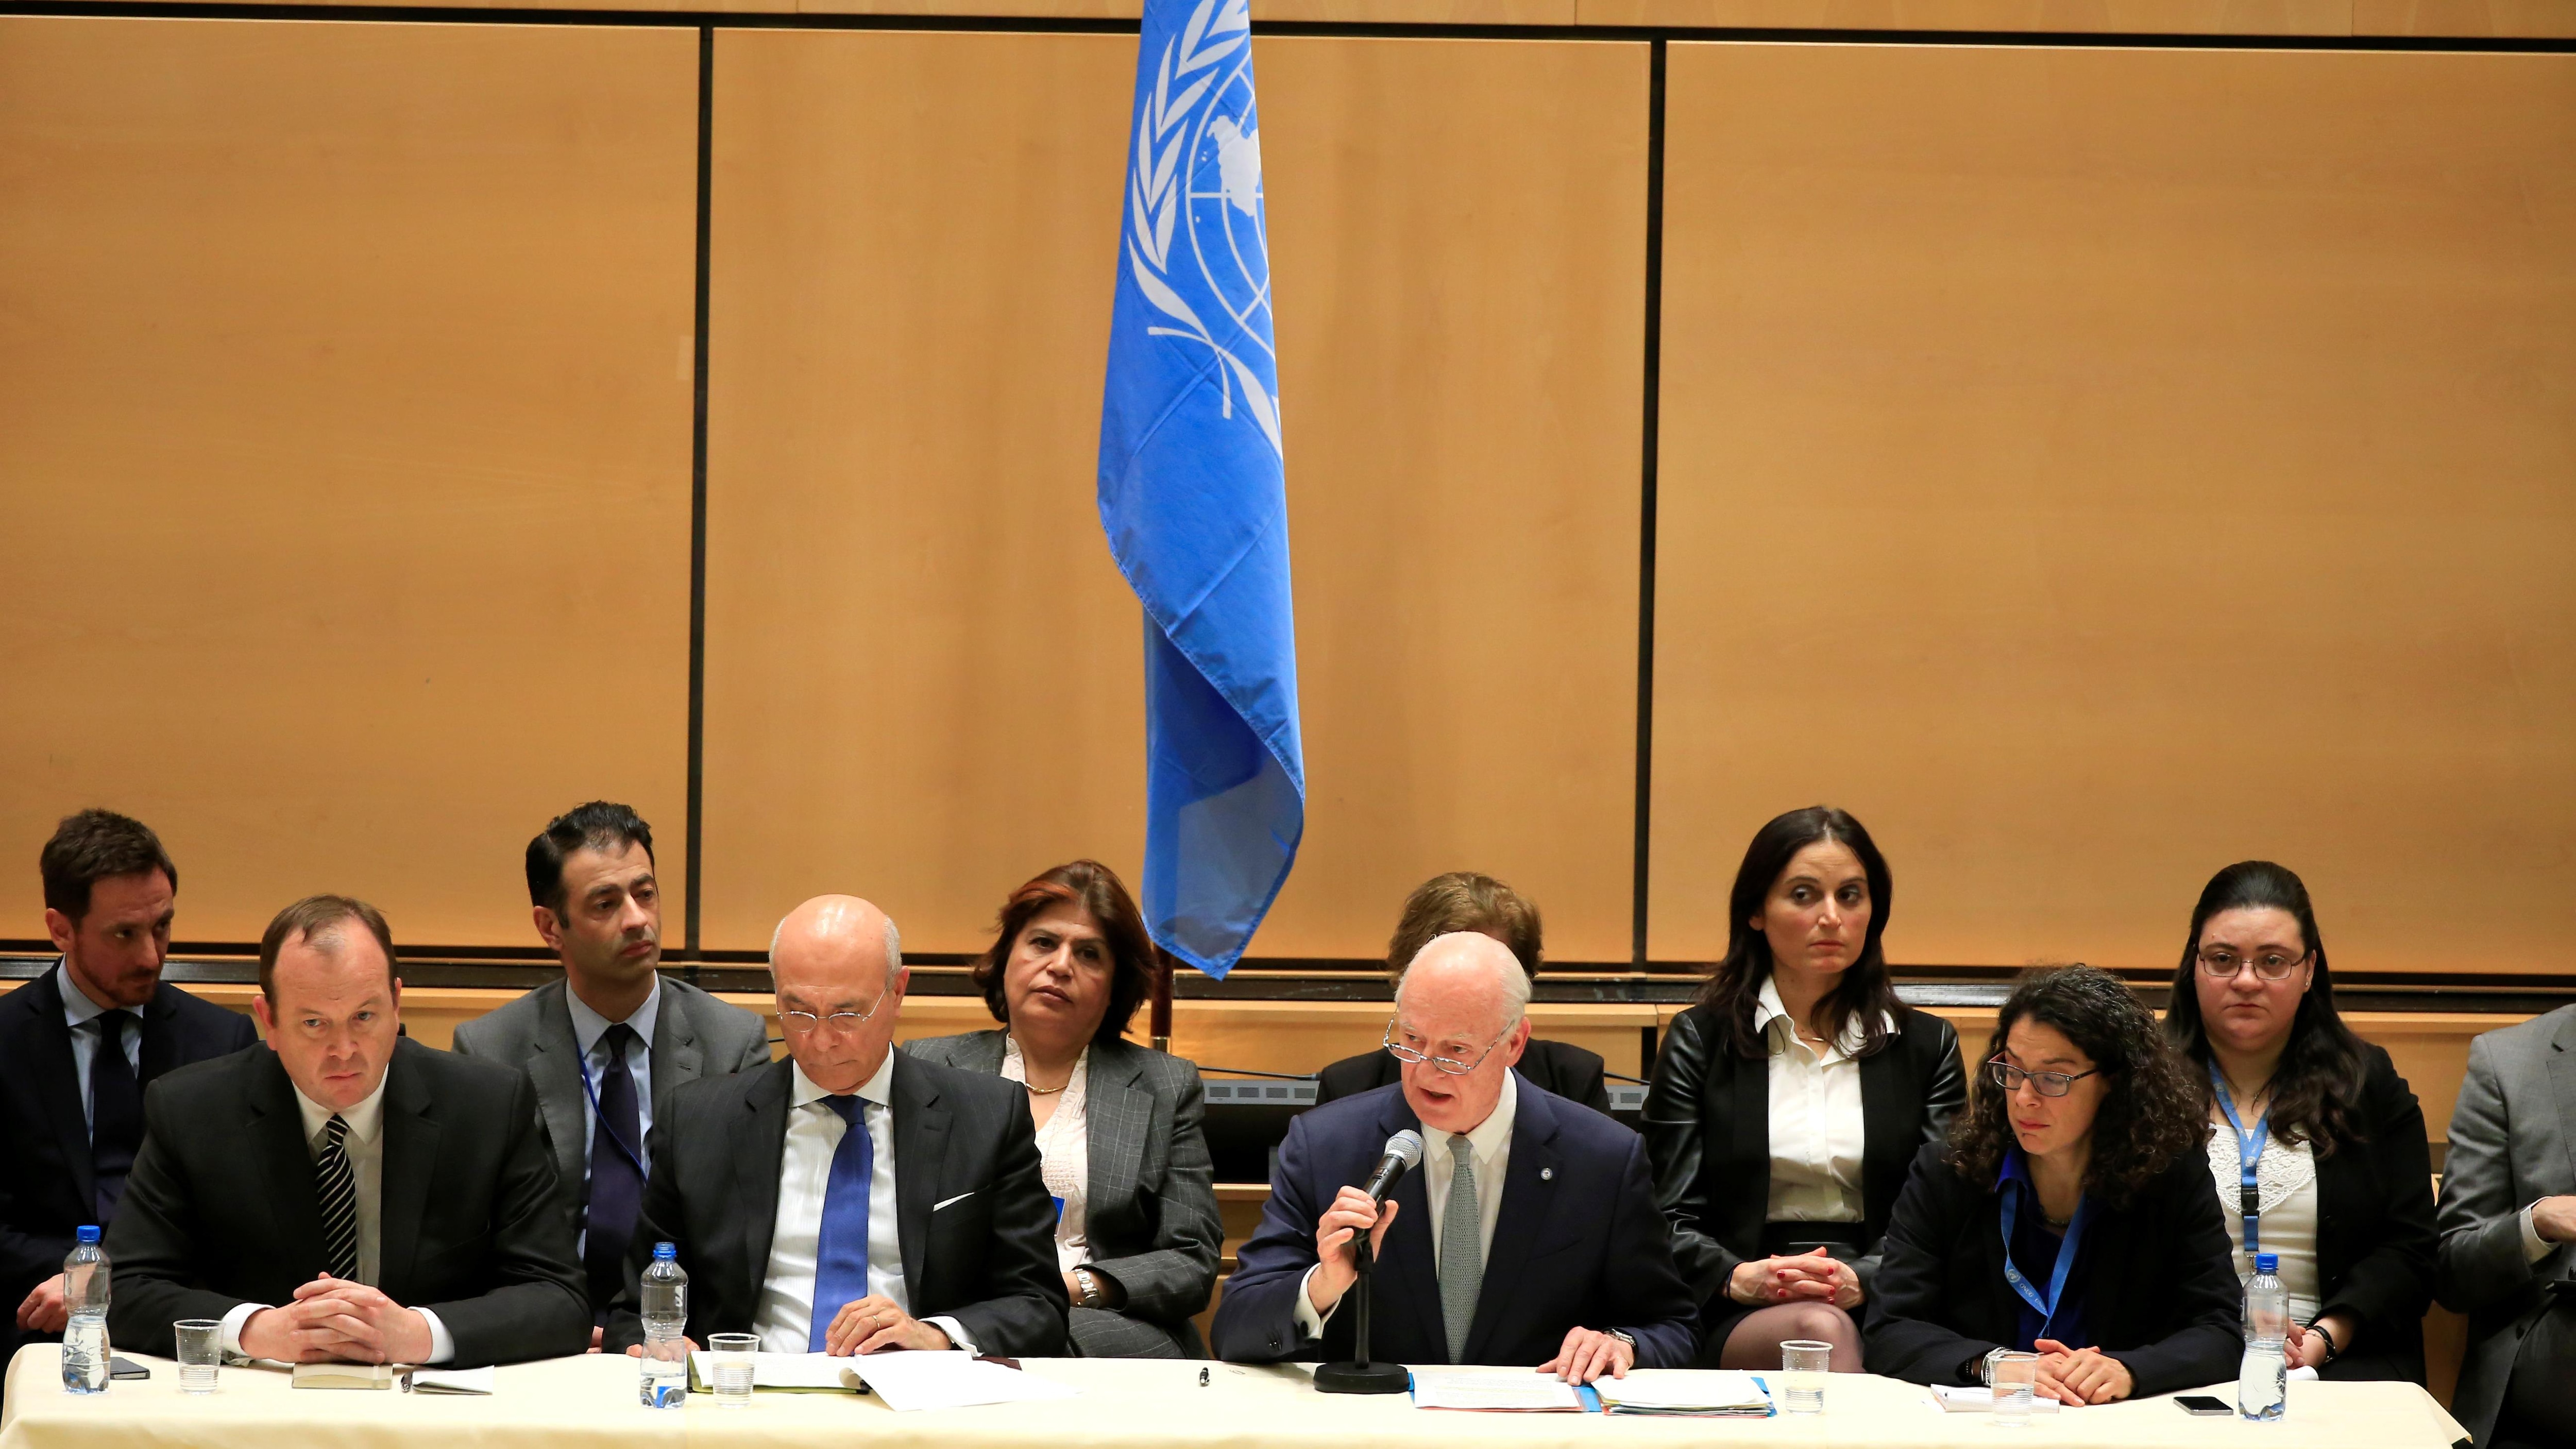 Reprise des discussions de paix organisées par l'ONU sur la Syrie